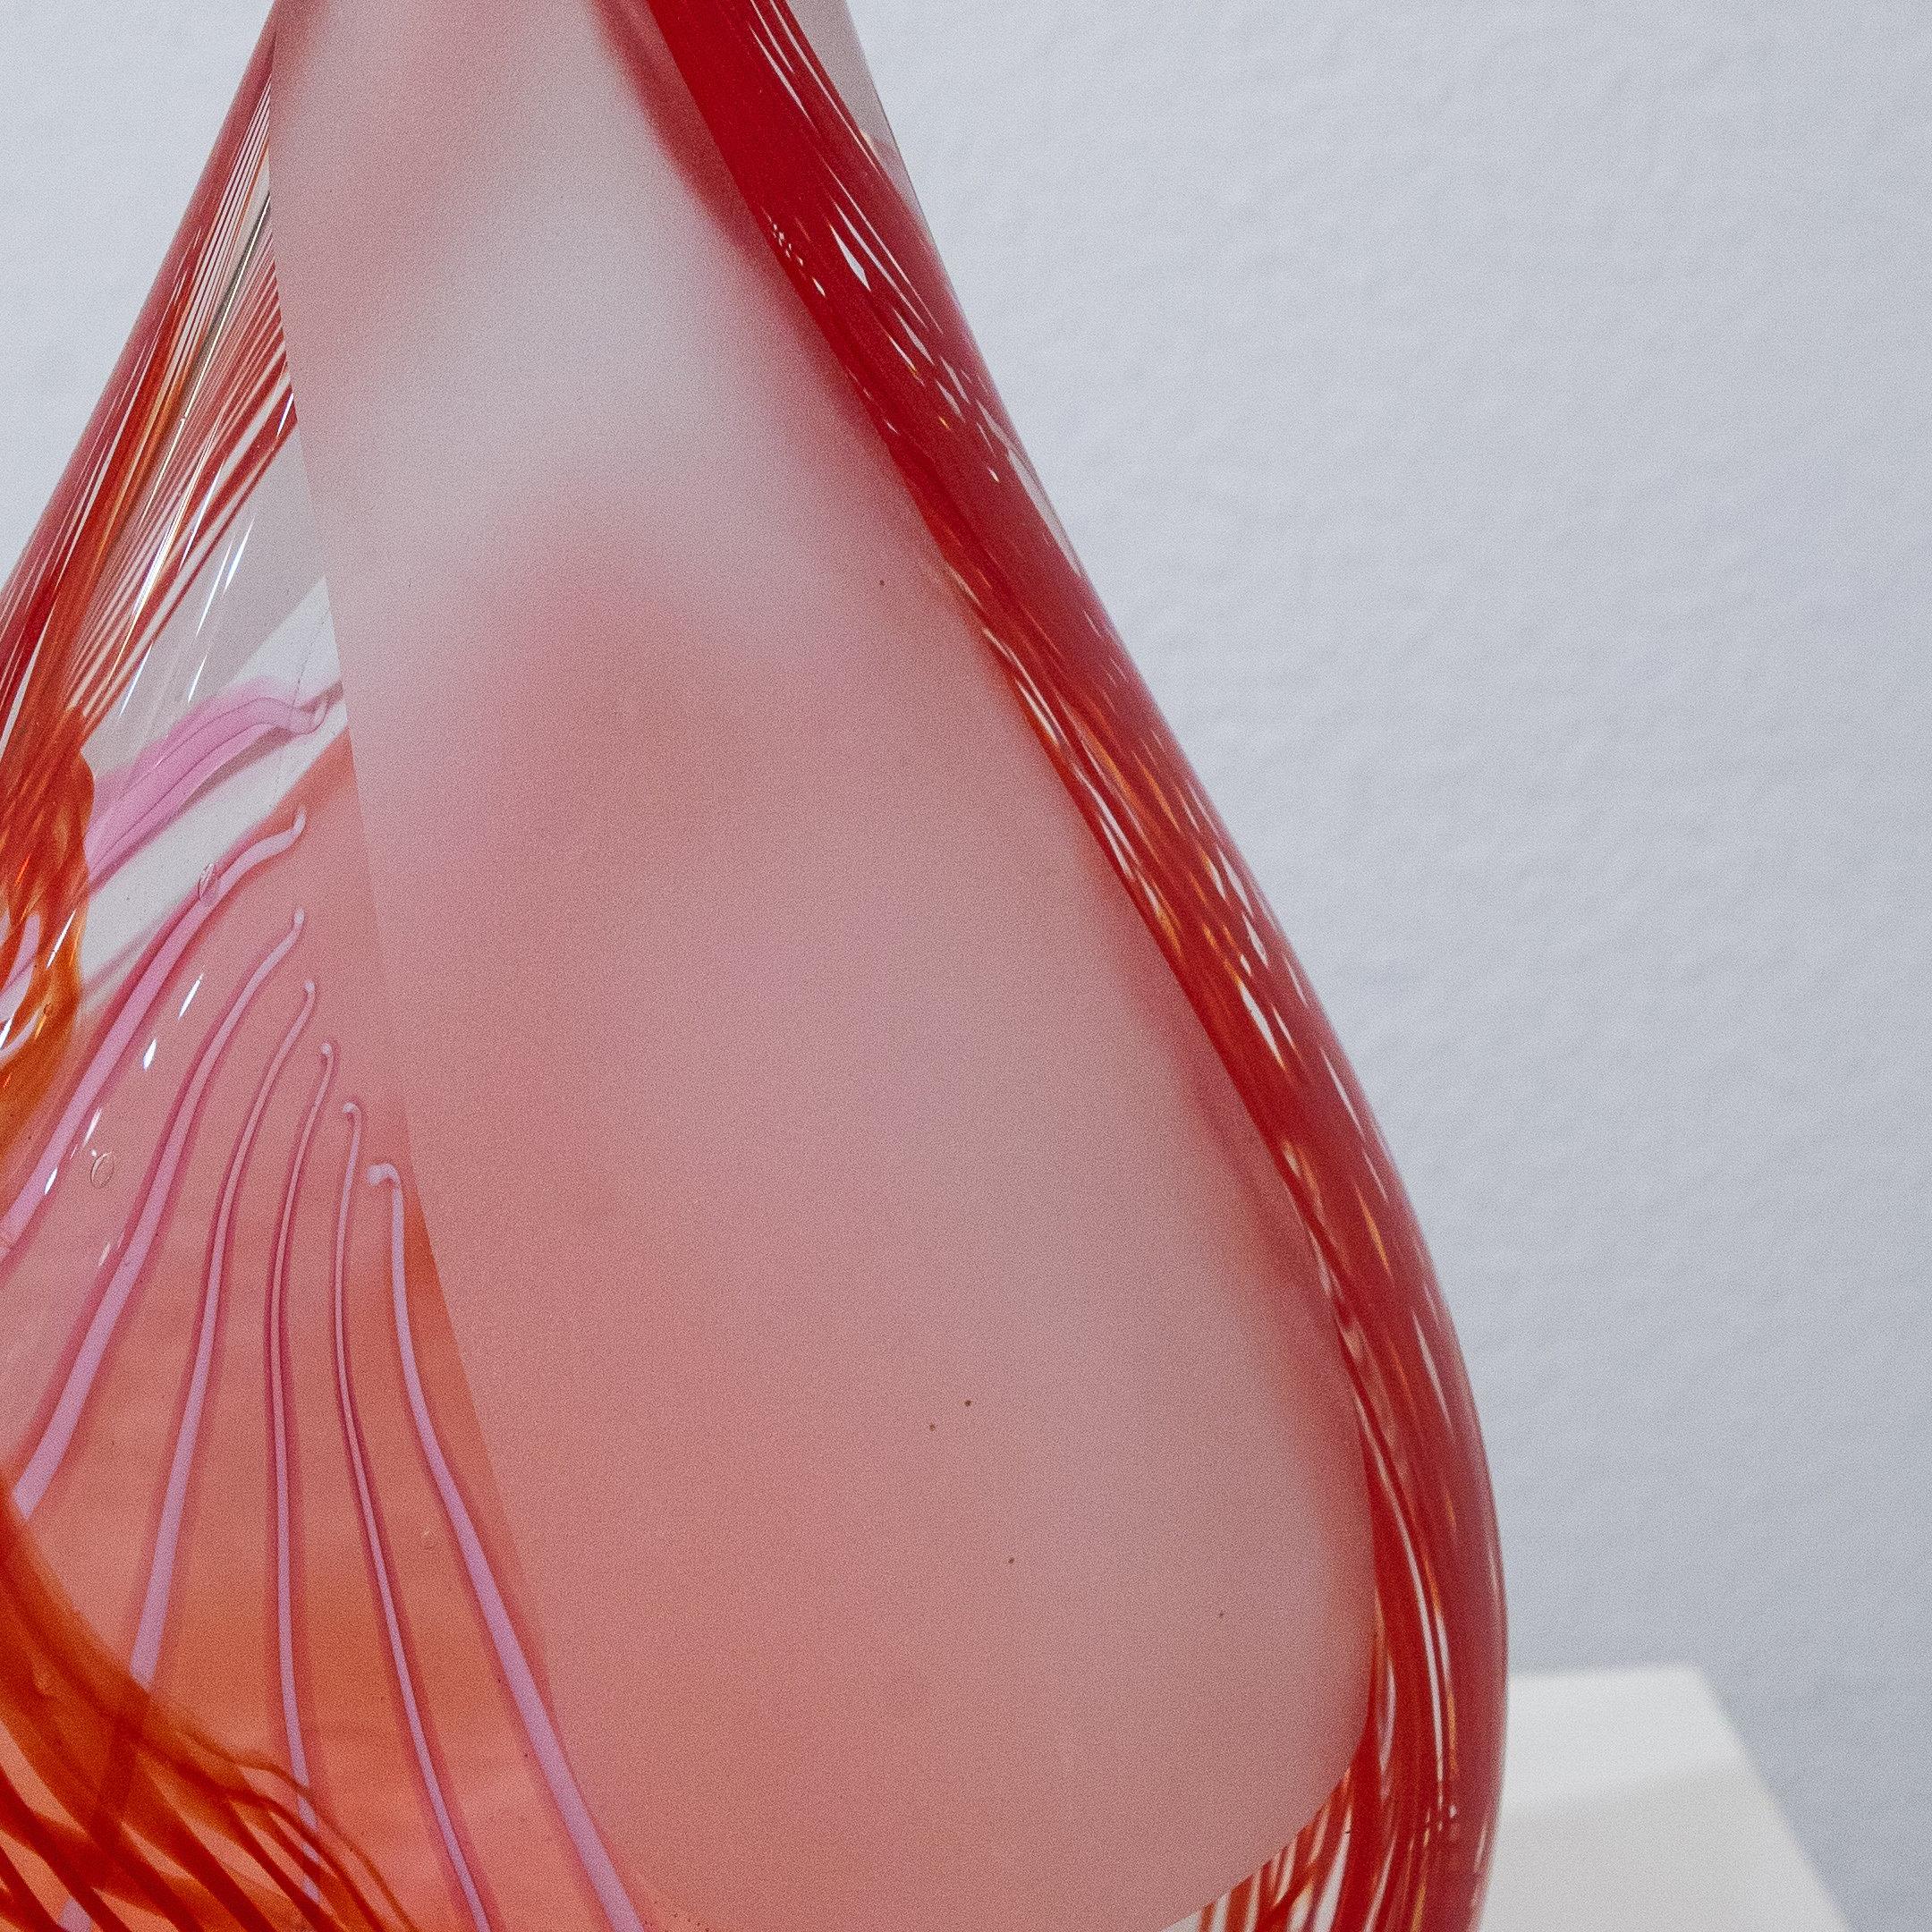 Red Teardrop - Contemporary Sculpture by Robert Burch